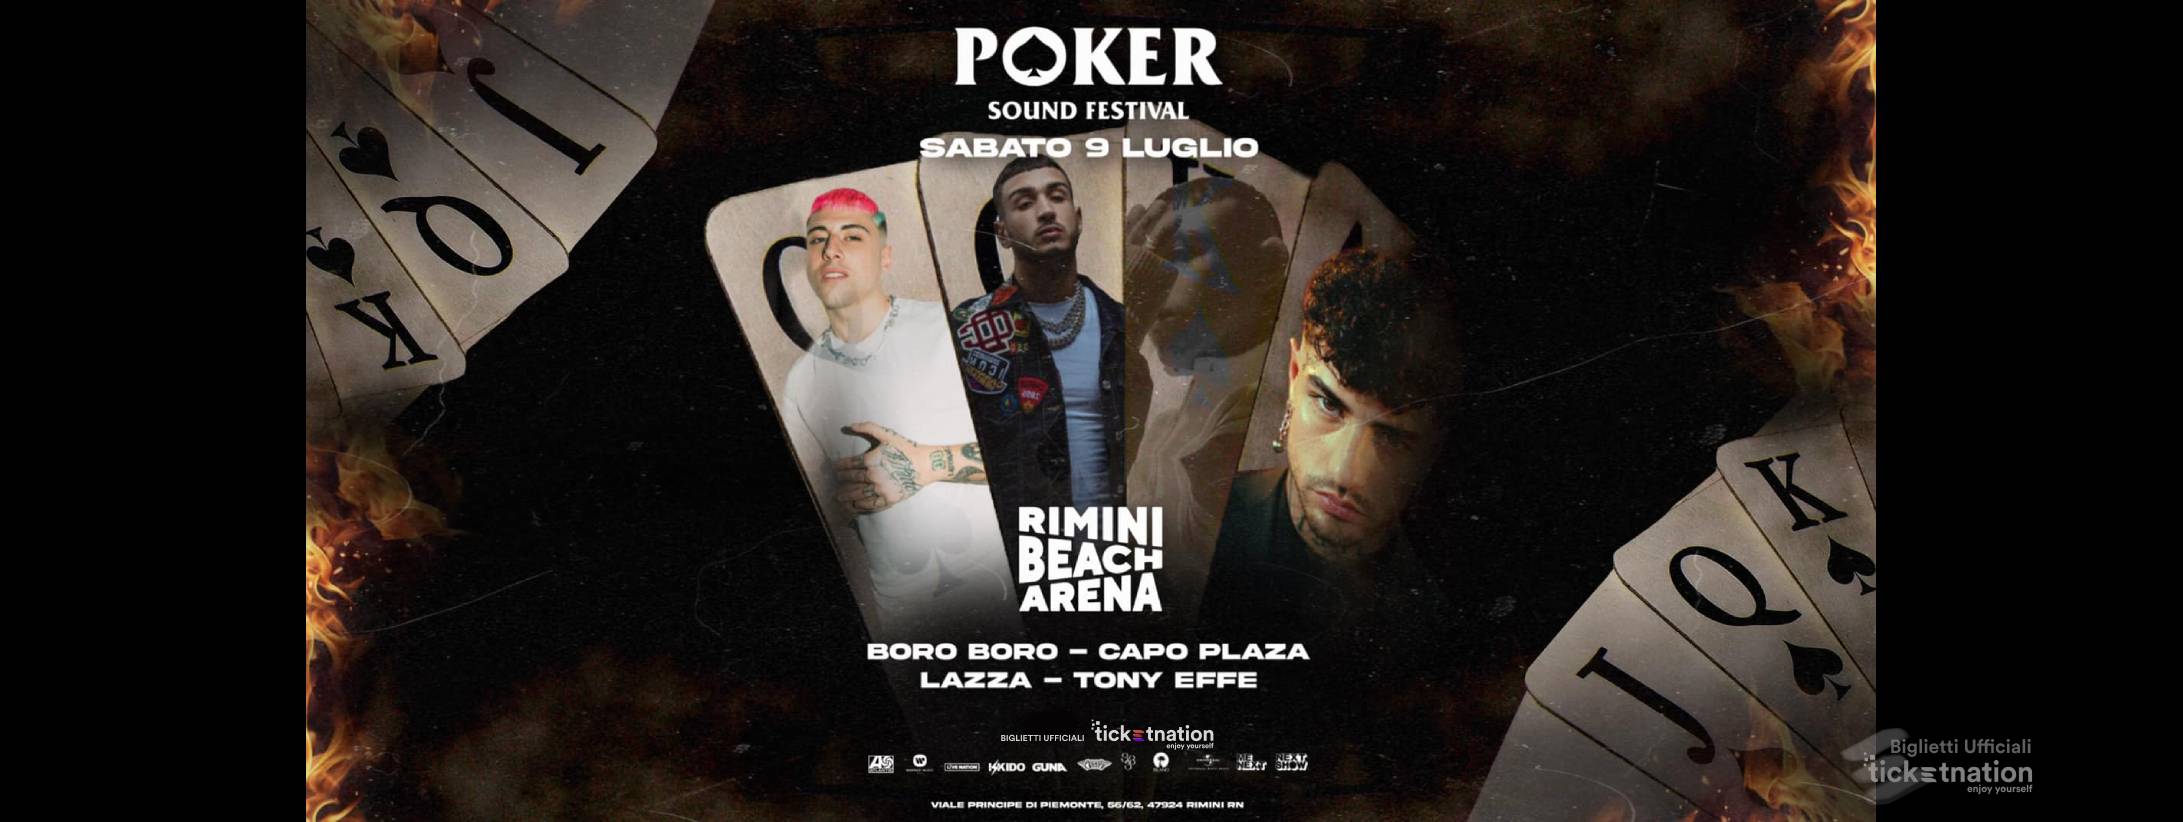 POKER SOUND FESTIVAL @ Rimini beach arena sabato 9 luglio 2022